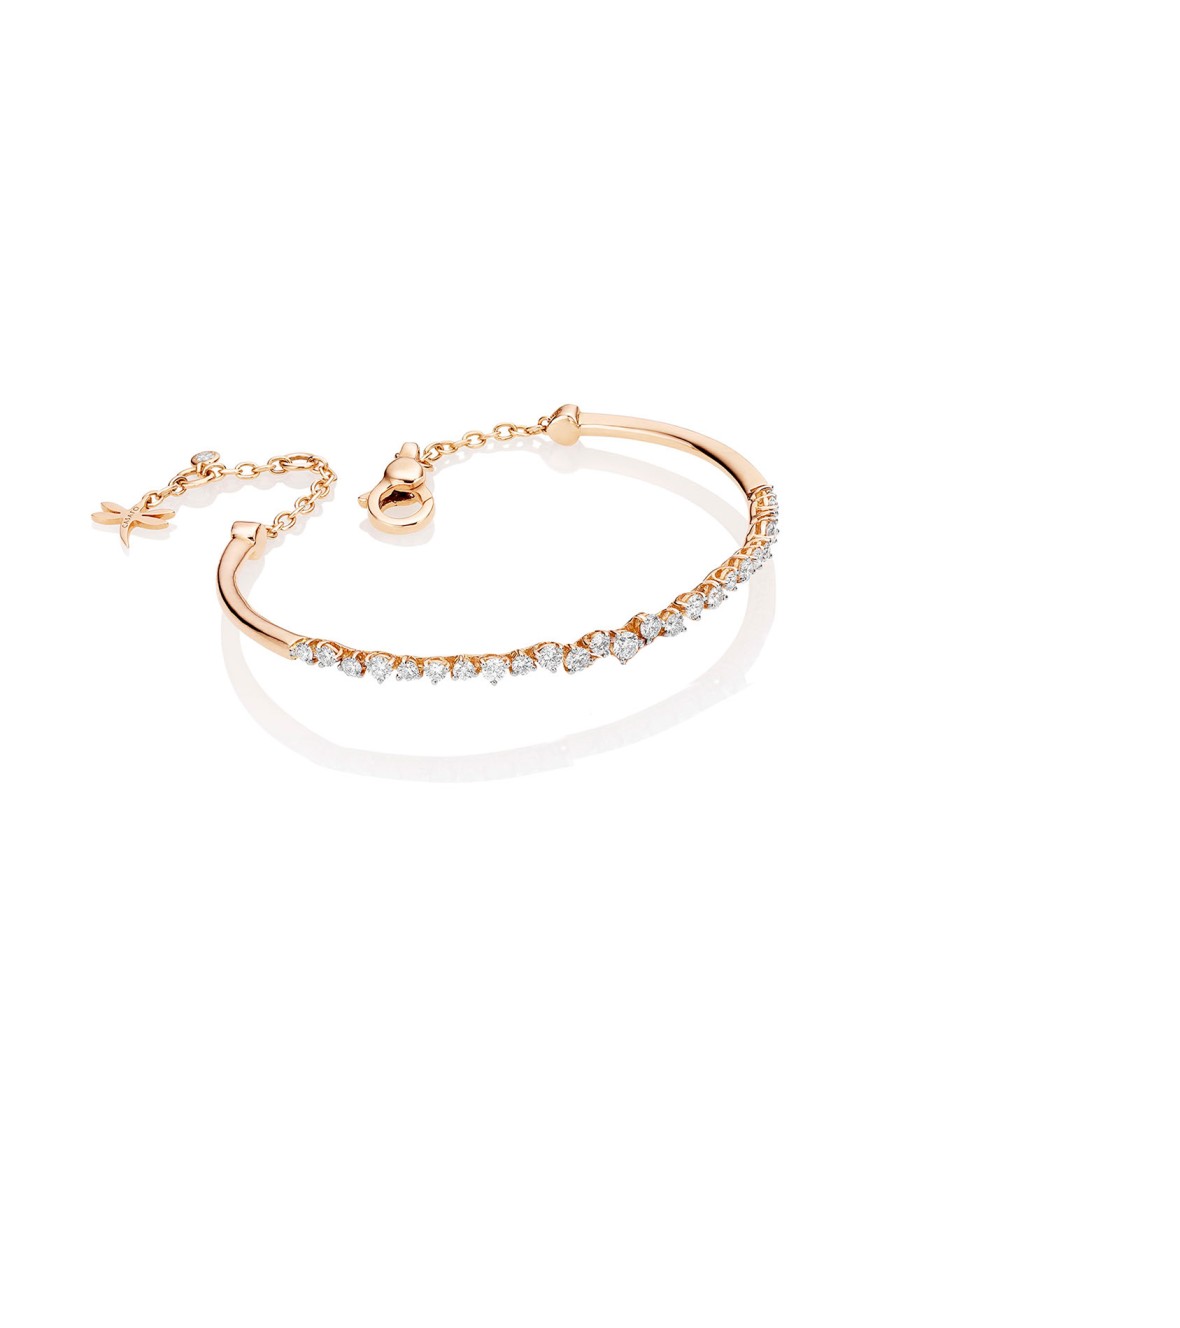 Pink Gold Bracelet with Diamonds BRX095BT by Casato